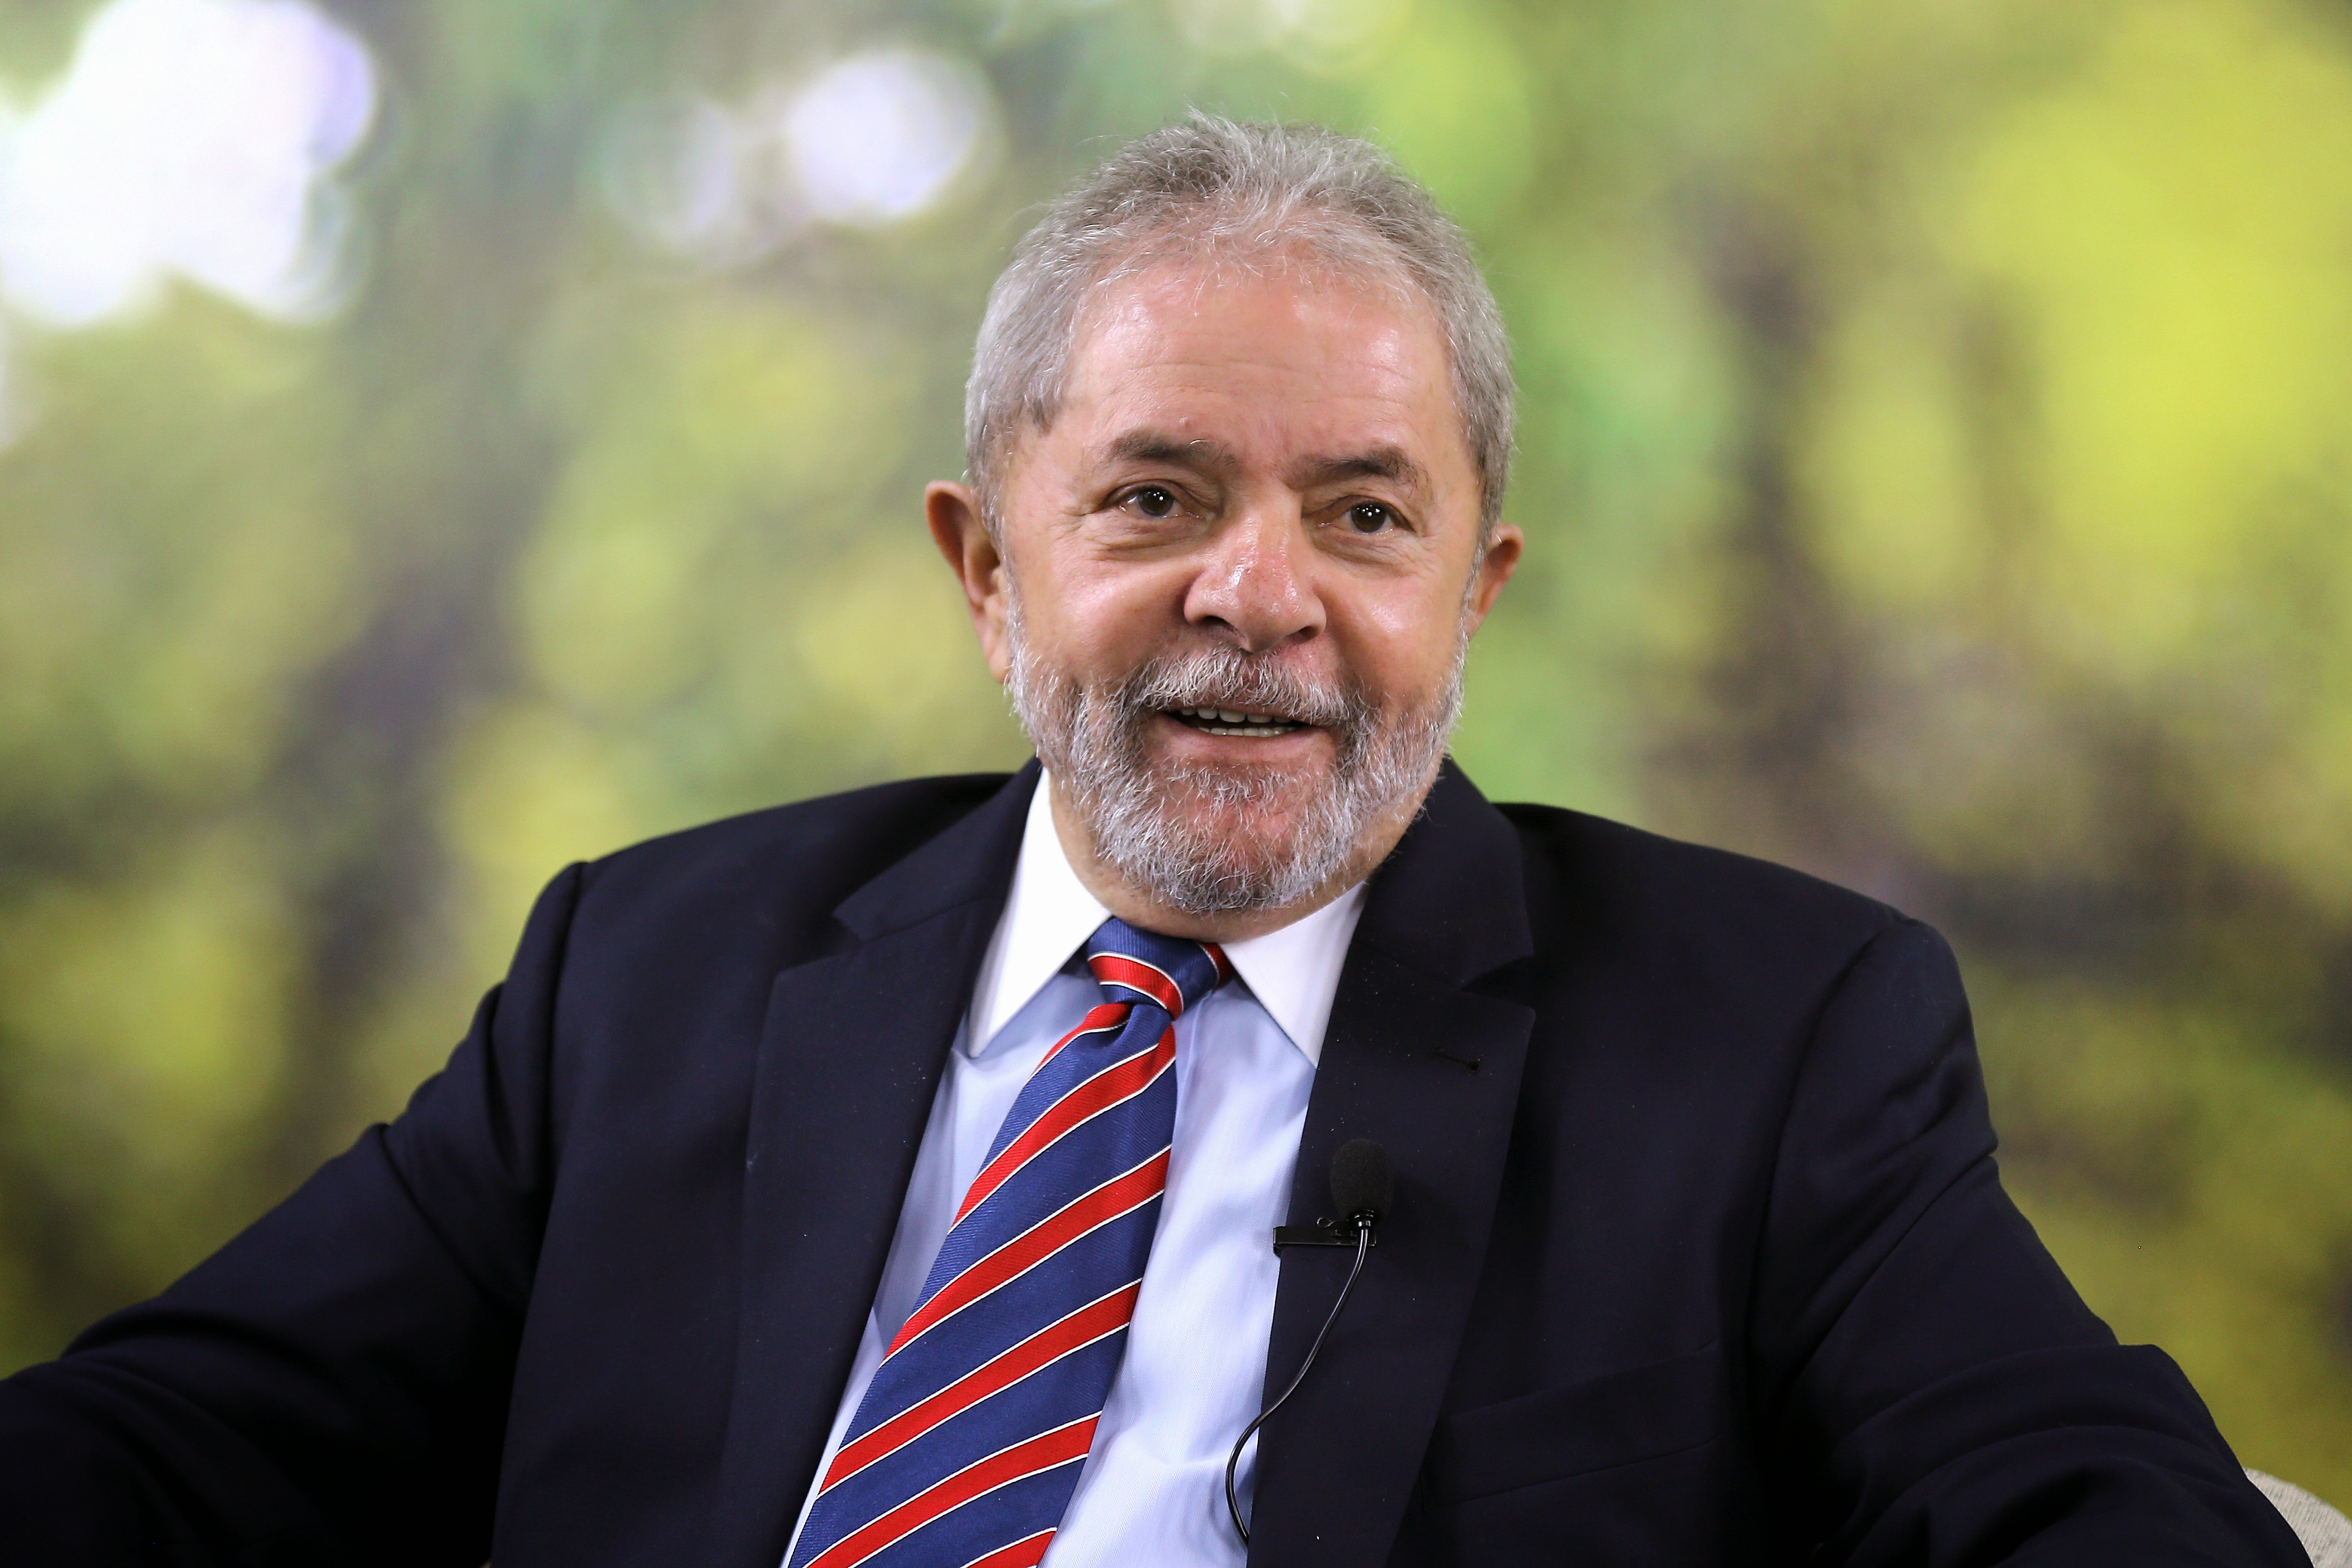  Moro ouve ex-executivos da Petrobras e ex-ministra, em ação penal relacionada ao ex-presidente Lula